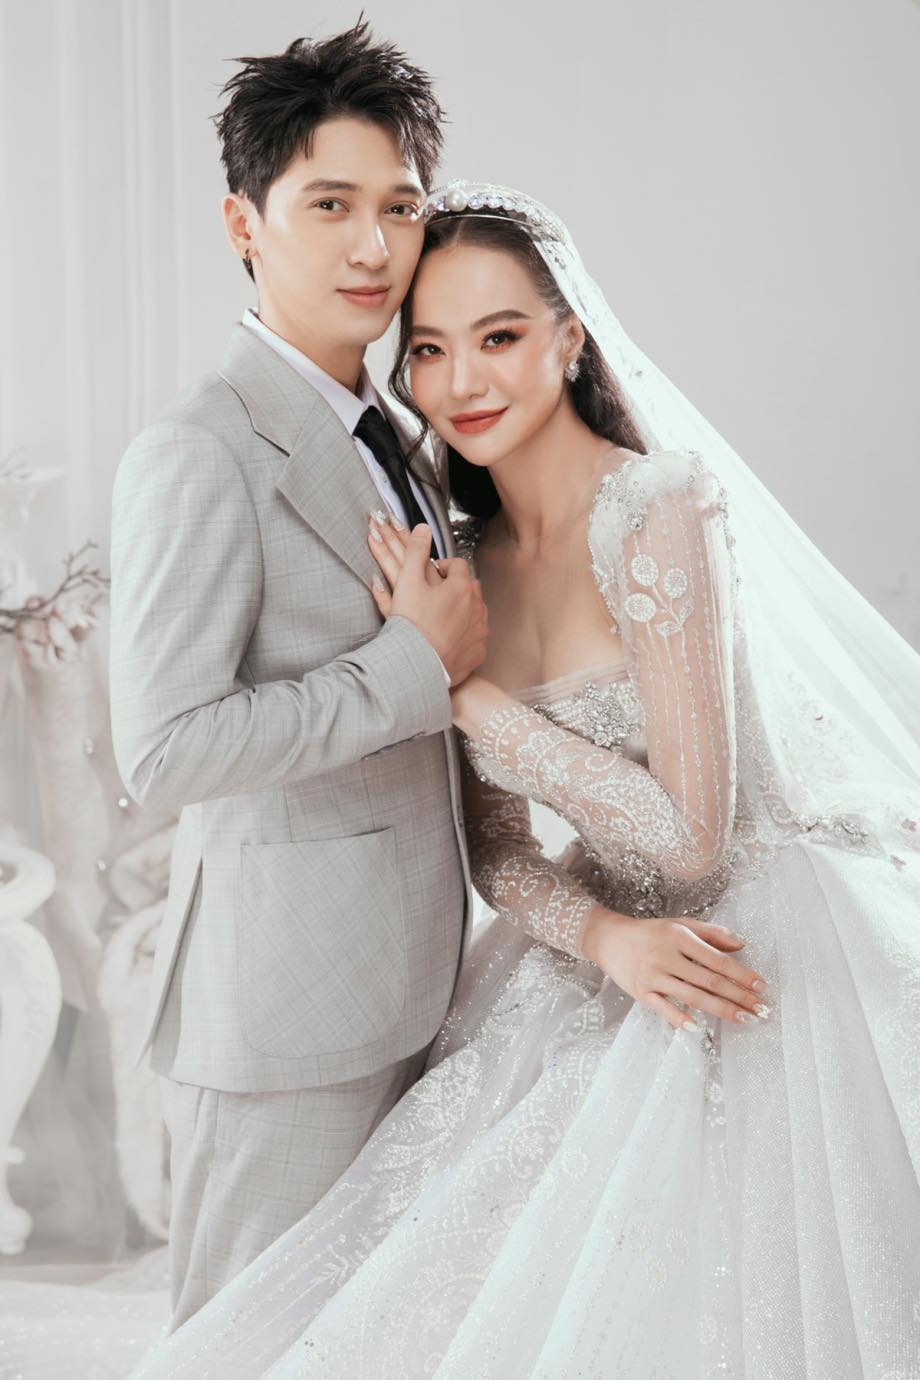 Lễ cưới giản dị của Hoa hậu Kiều Ngân và cựu thành viên 365 Tronie Ngô, cô dâu đeo vàng hí hửng về nhà chồng - ảnh 5